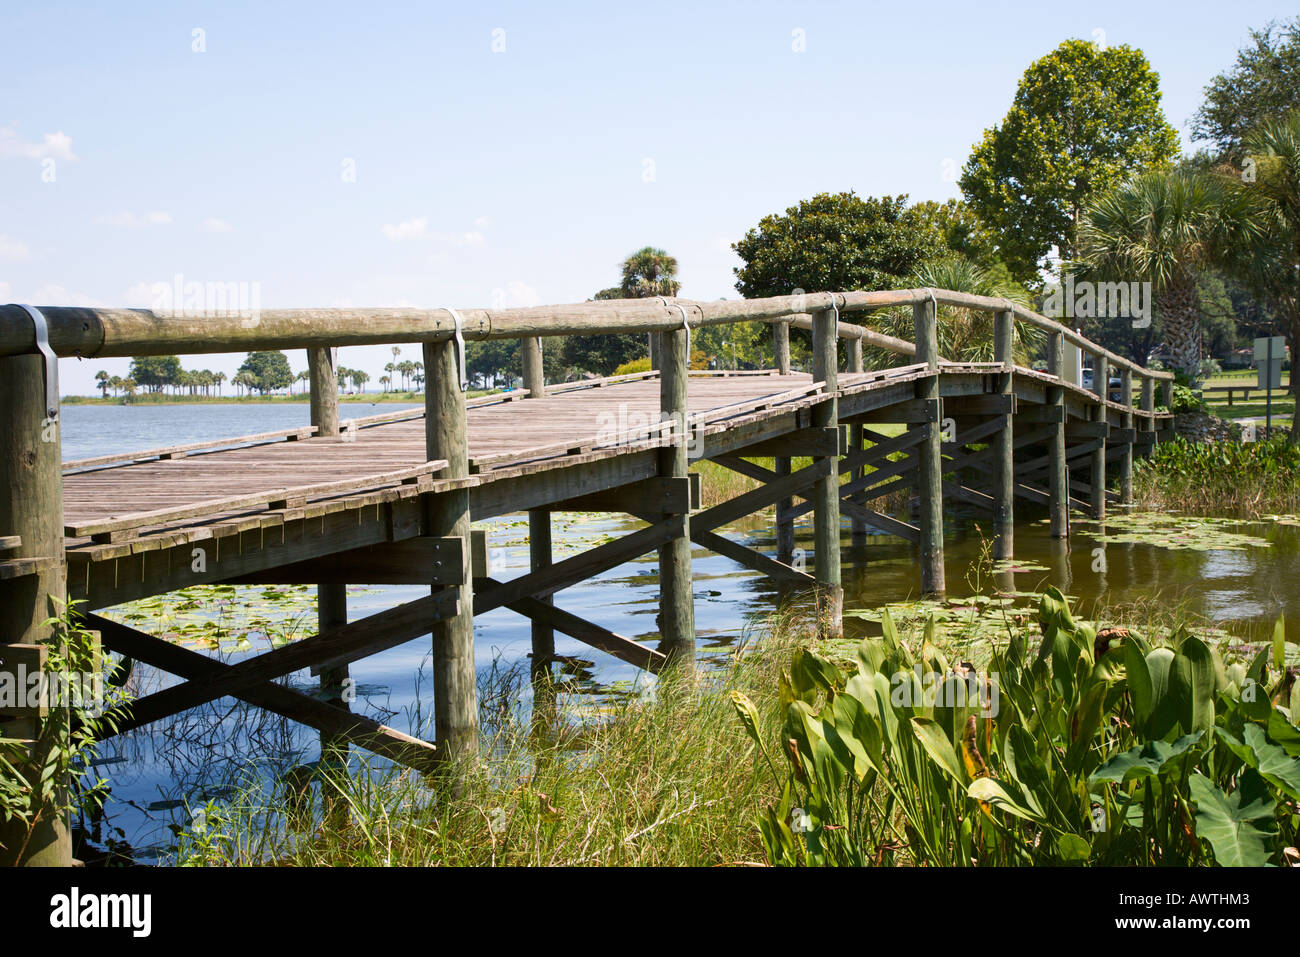 Walking Bridge In Venetian Gardens City Park At Leesburg Florida